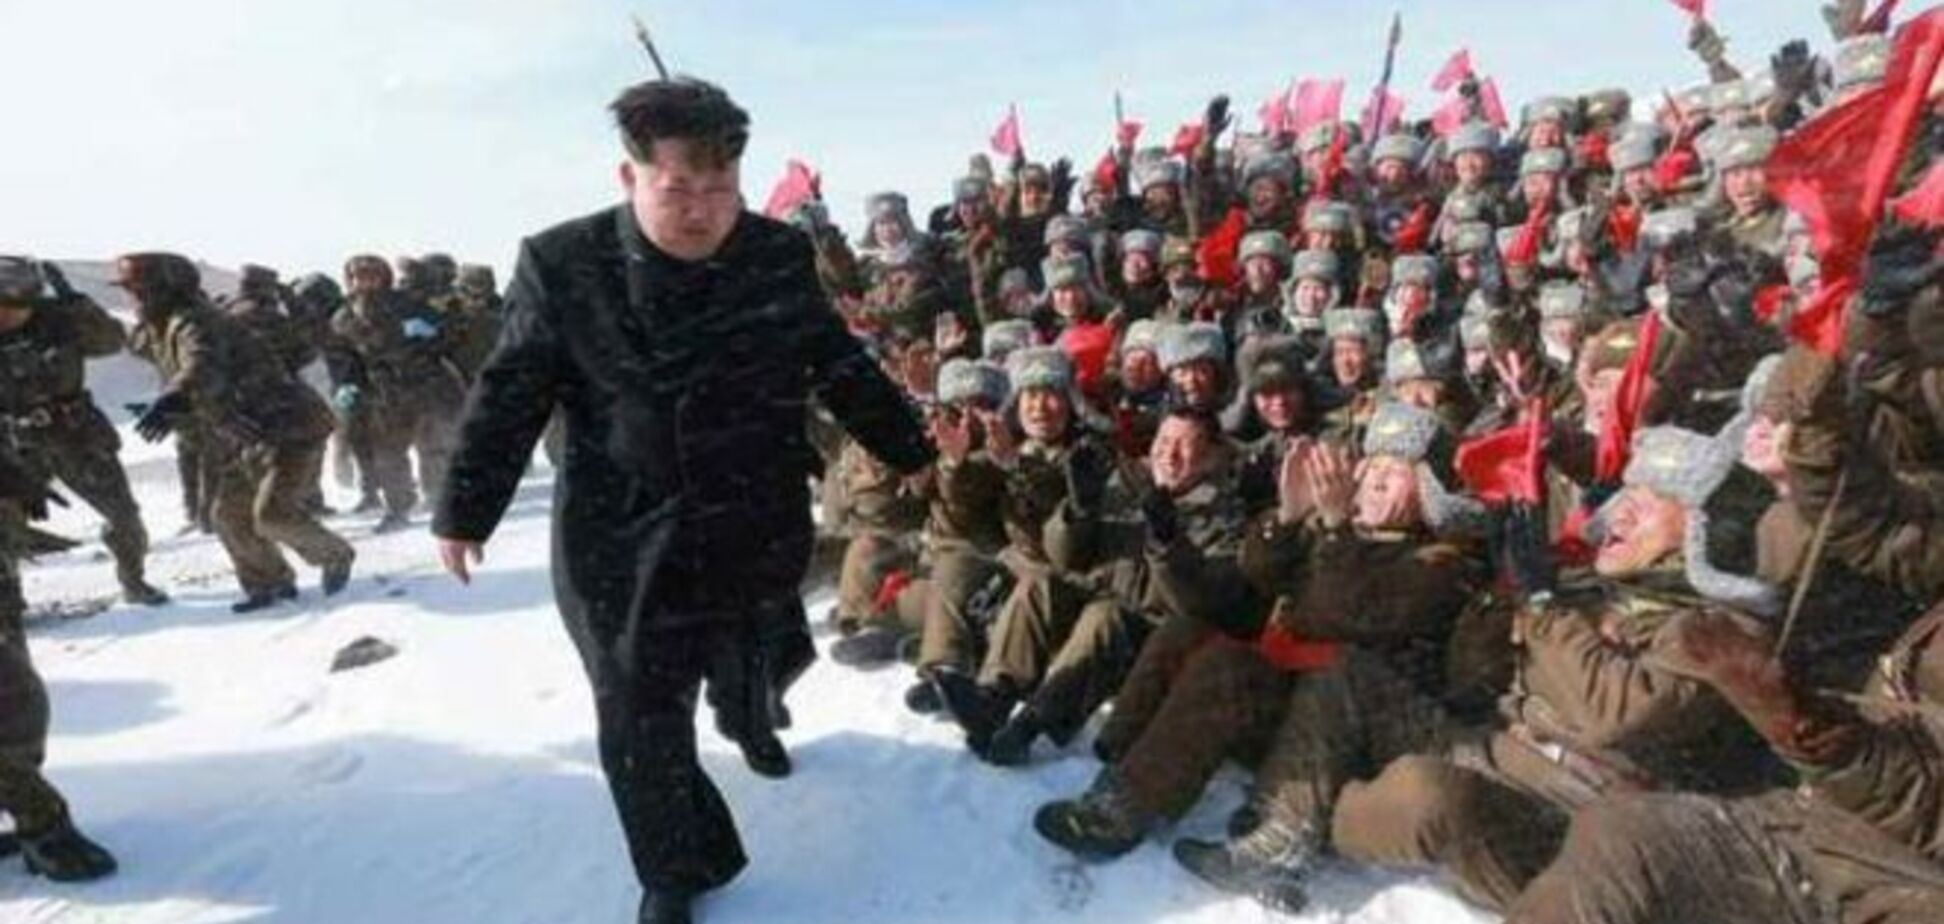 Покорение горы в туфлях: пользователи соцсетей высмеяли 'скалолаза' Ким Чен Ына